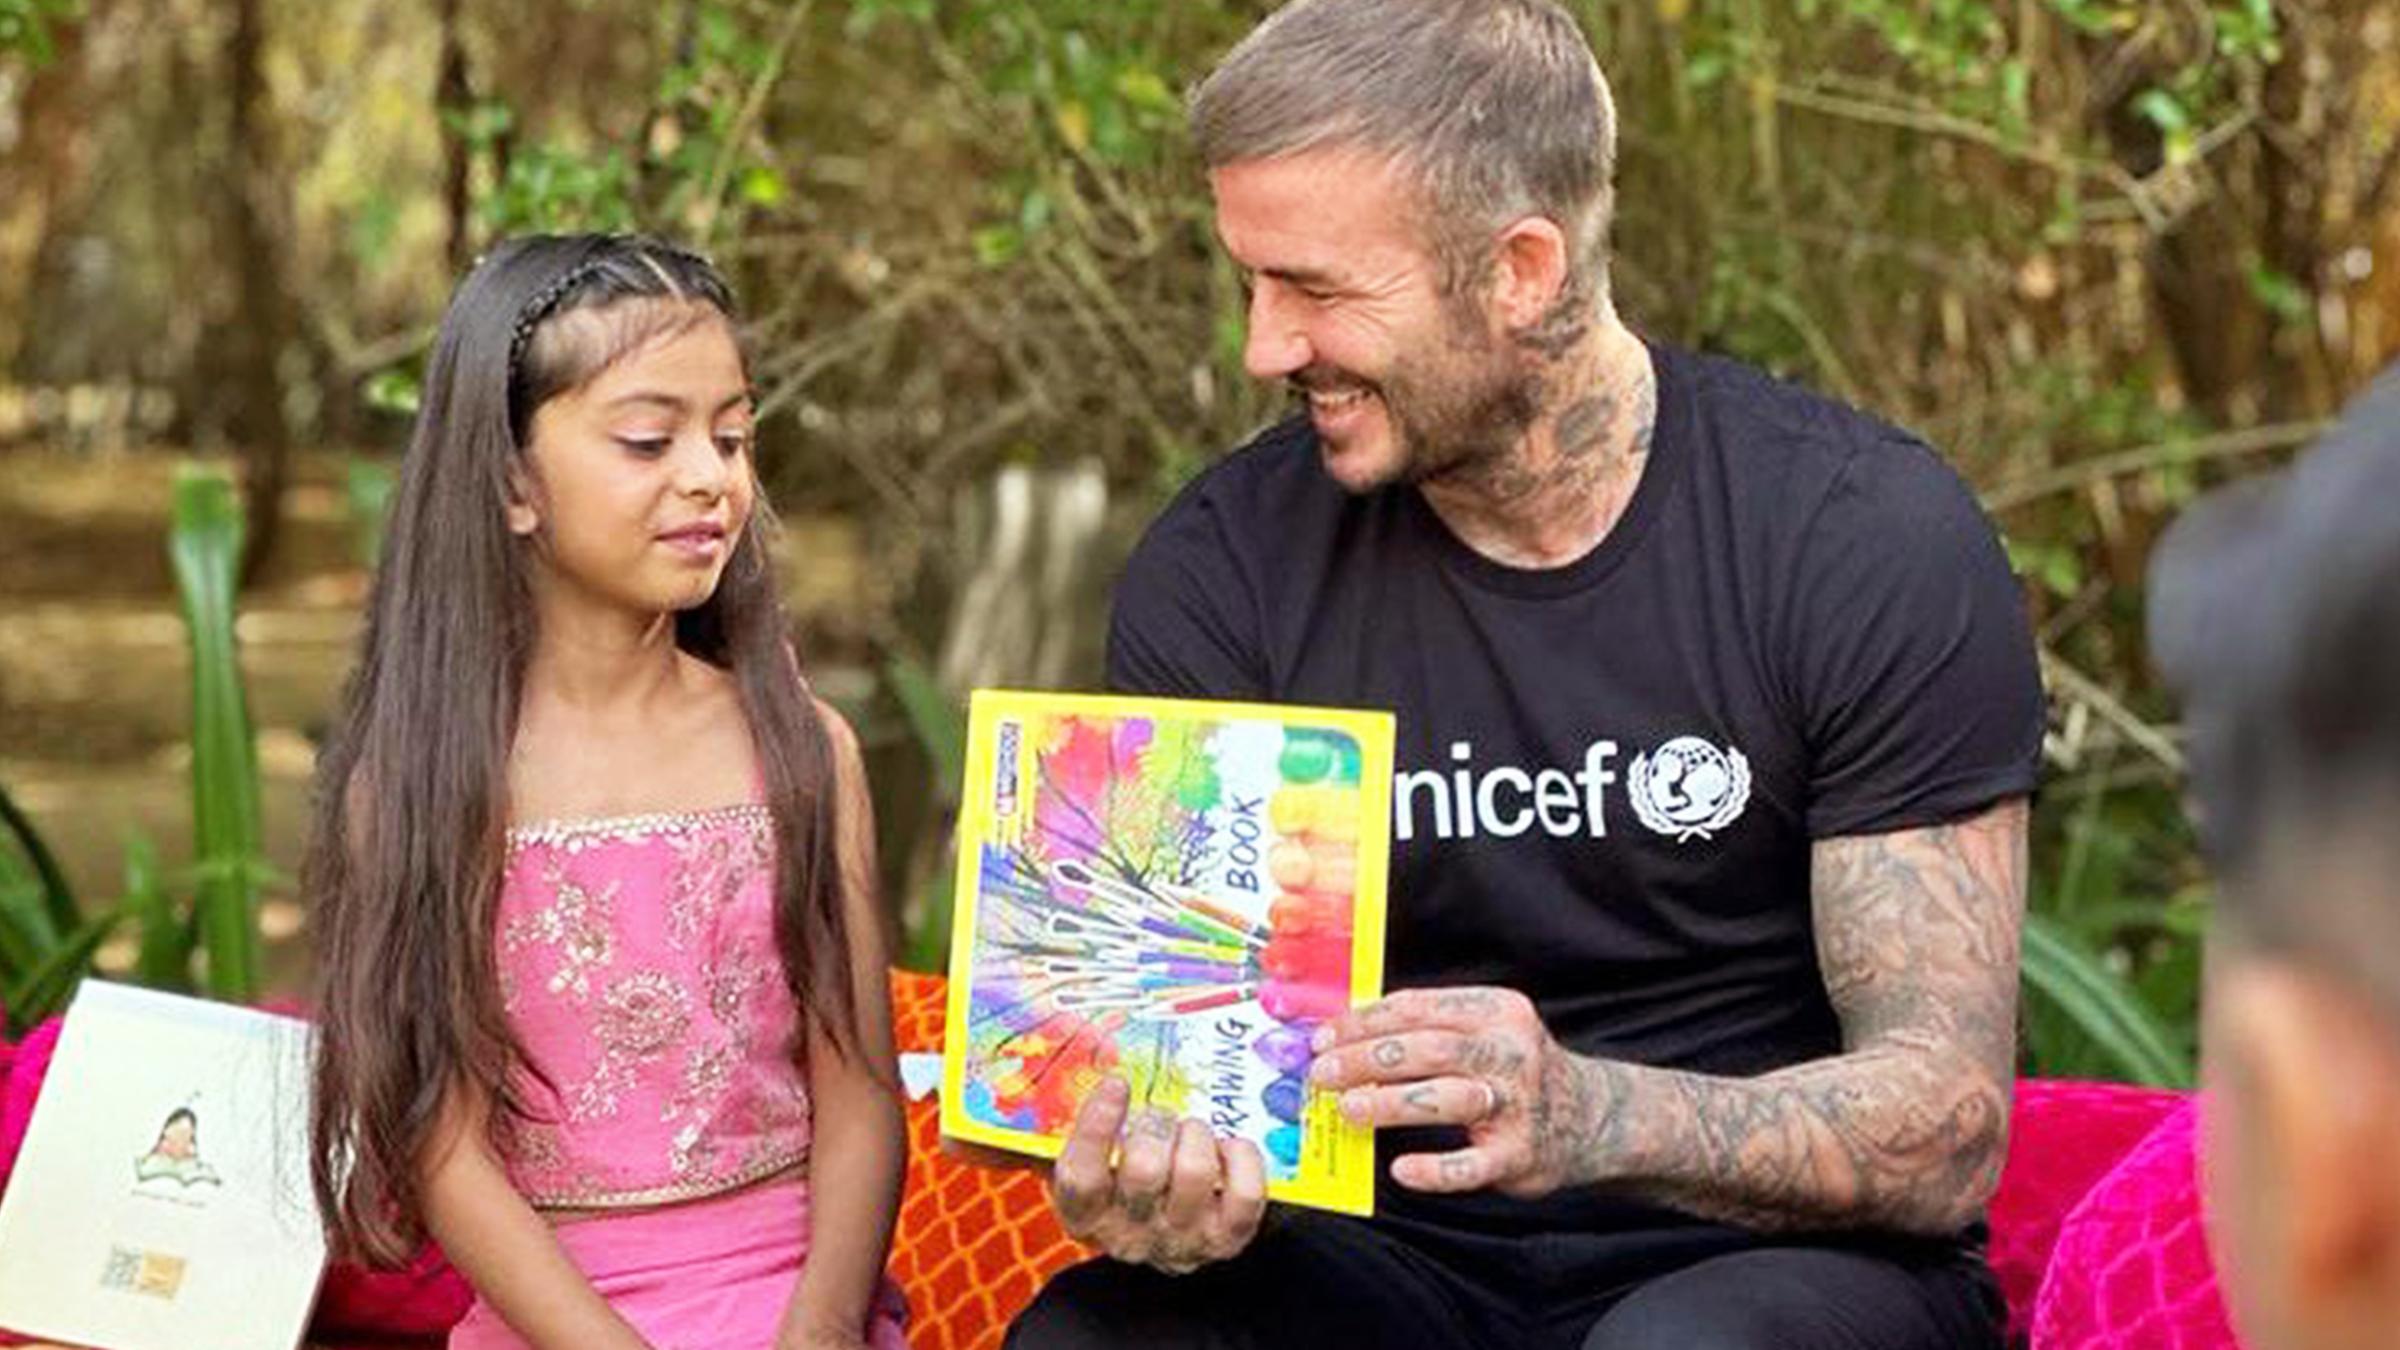 David Beckham sitzt neben einem jungen Mädchen.